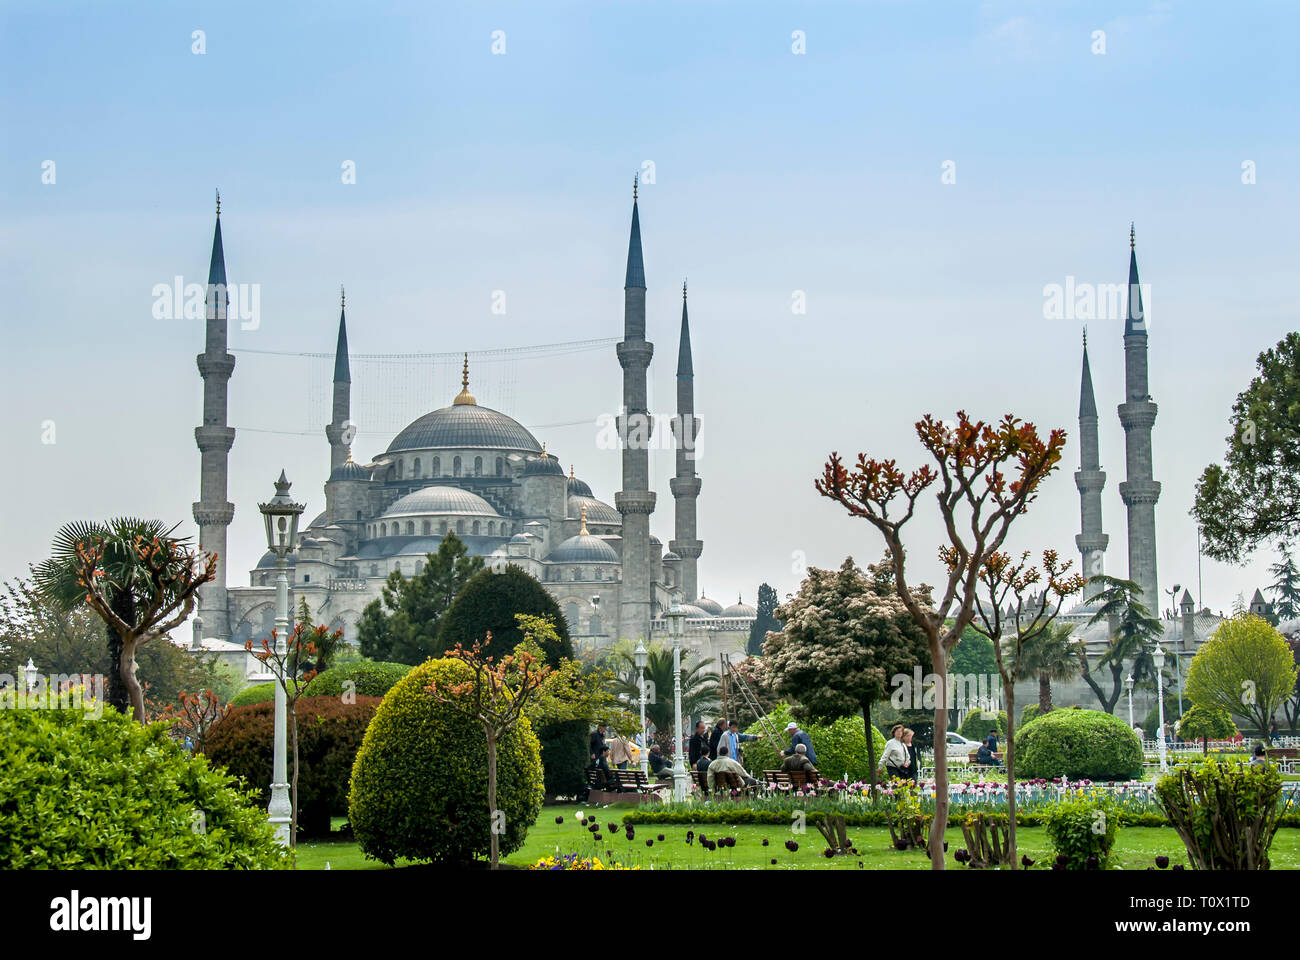 Istanbul, Türkei, 9. Mai 2006: Der Sultan Ahmed Moschee ist eine osmanische Moschee im Stadtteil Fatih Istanbul. Stockfoto